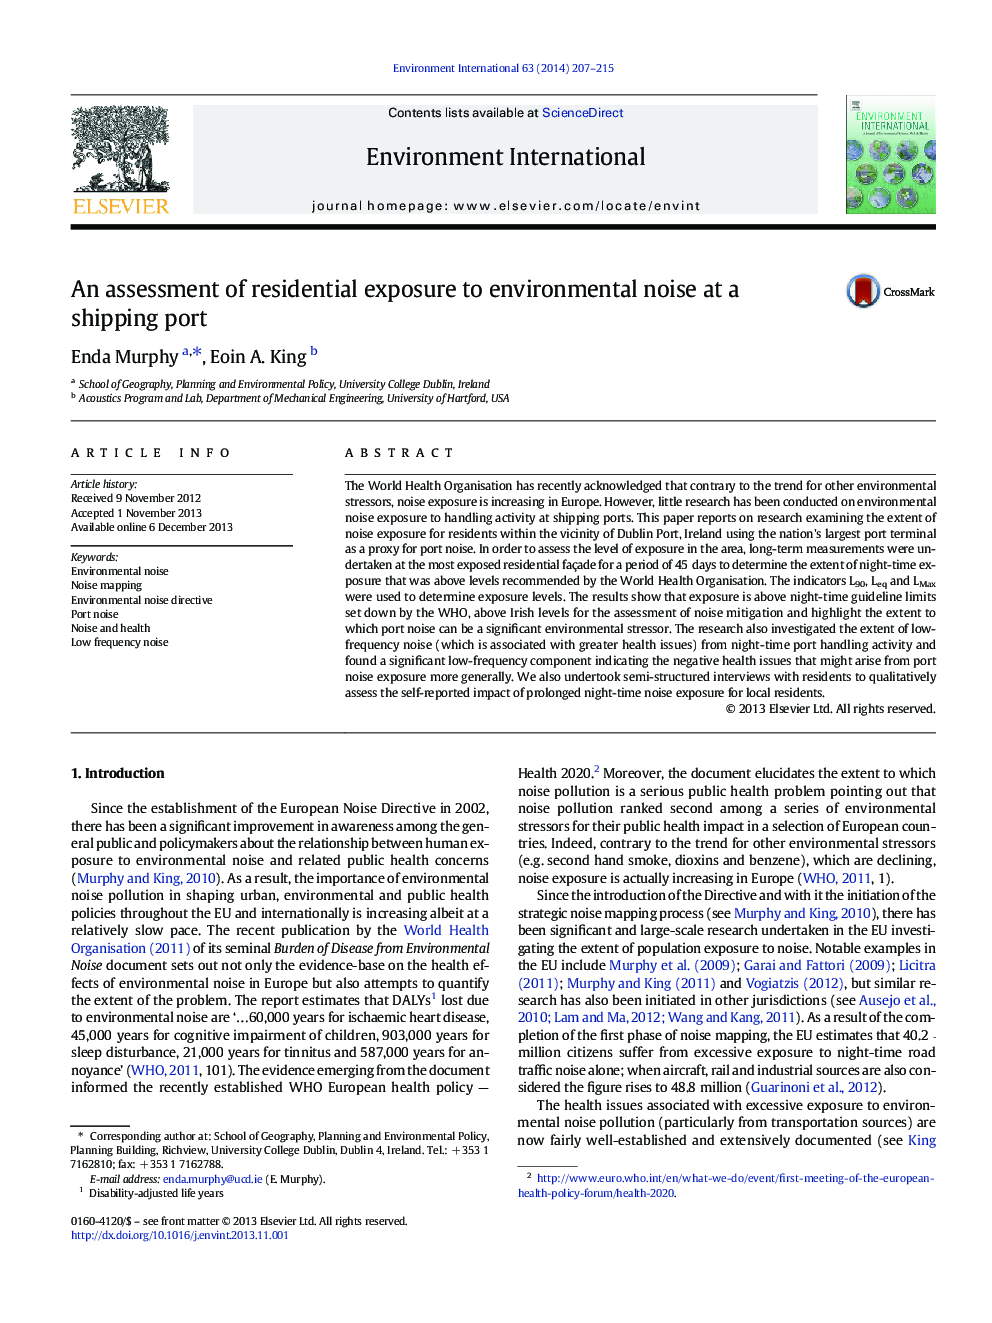 ارزیابی اثرات محیط زیست در محیط زیست در بندر حمل و نقل 